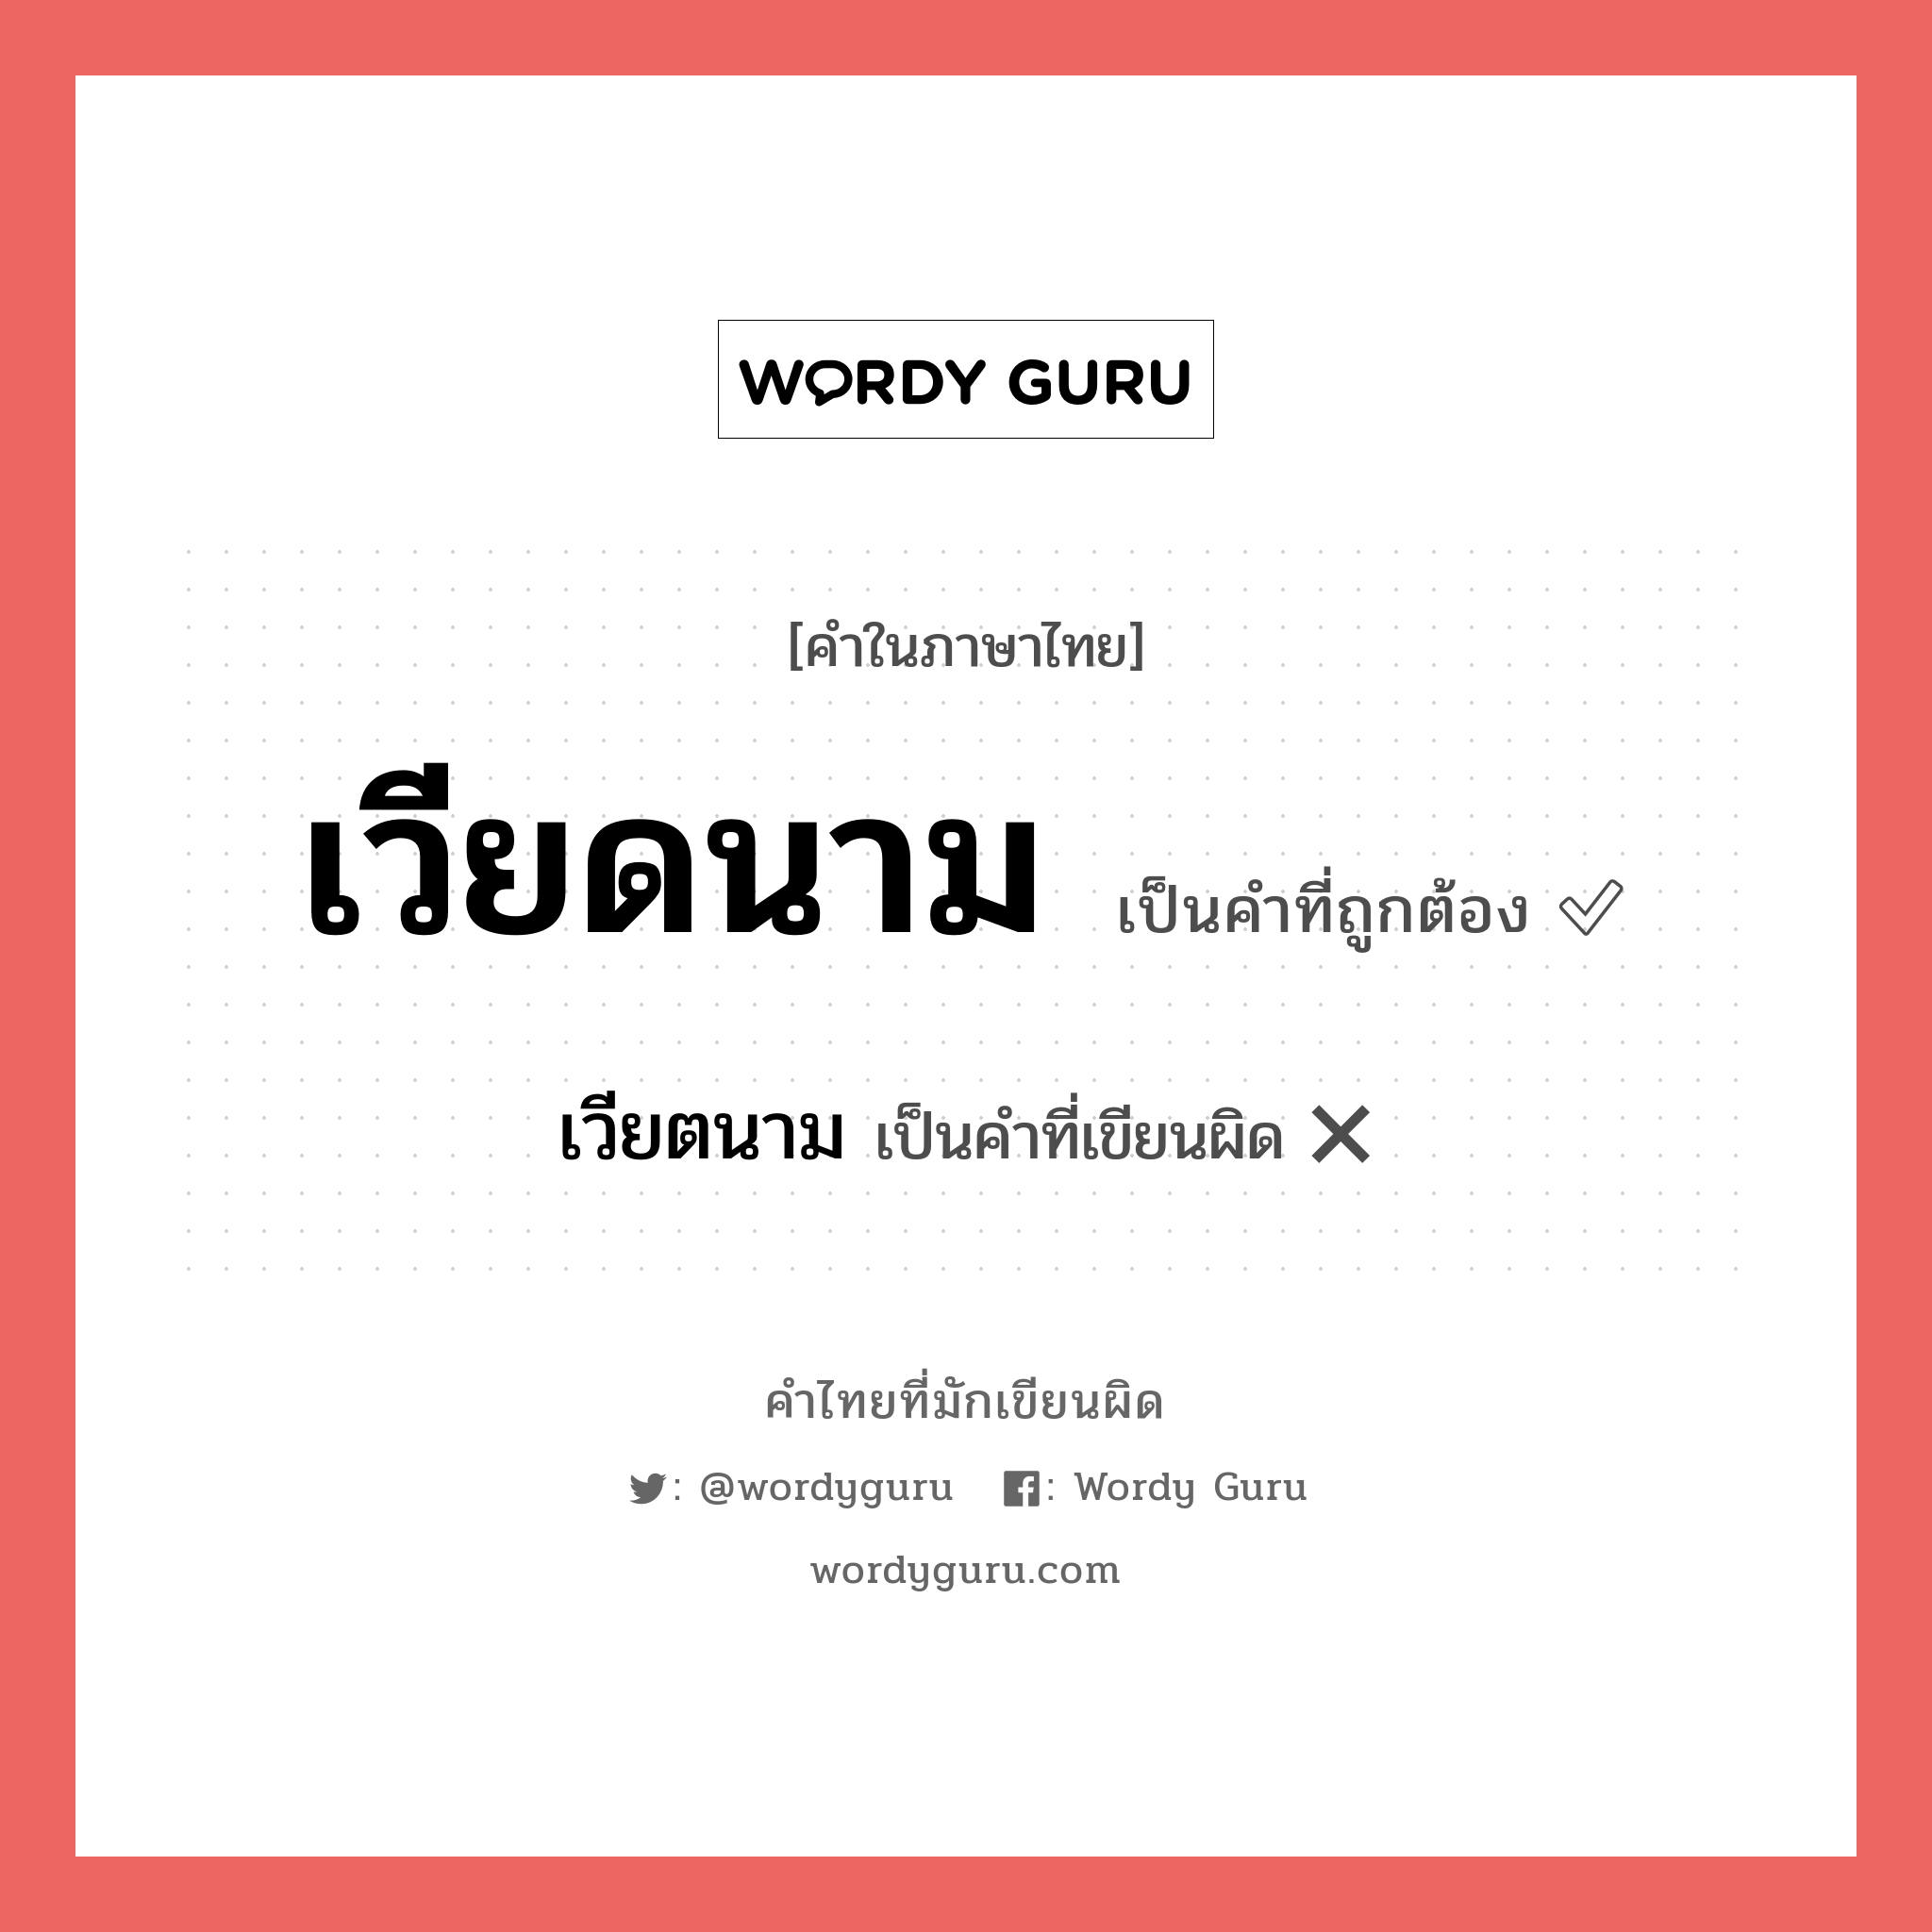 เวียดนาม หรือ เวียตนาม คำไหนเขียนถูก?, คำในภาษาไทยที่มักเขียนผิด เวียดนาม คำที่ผิด ❌ เวียตนาม